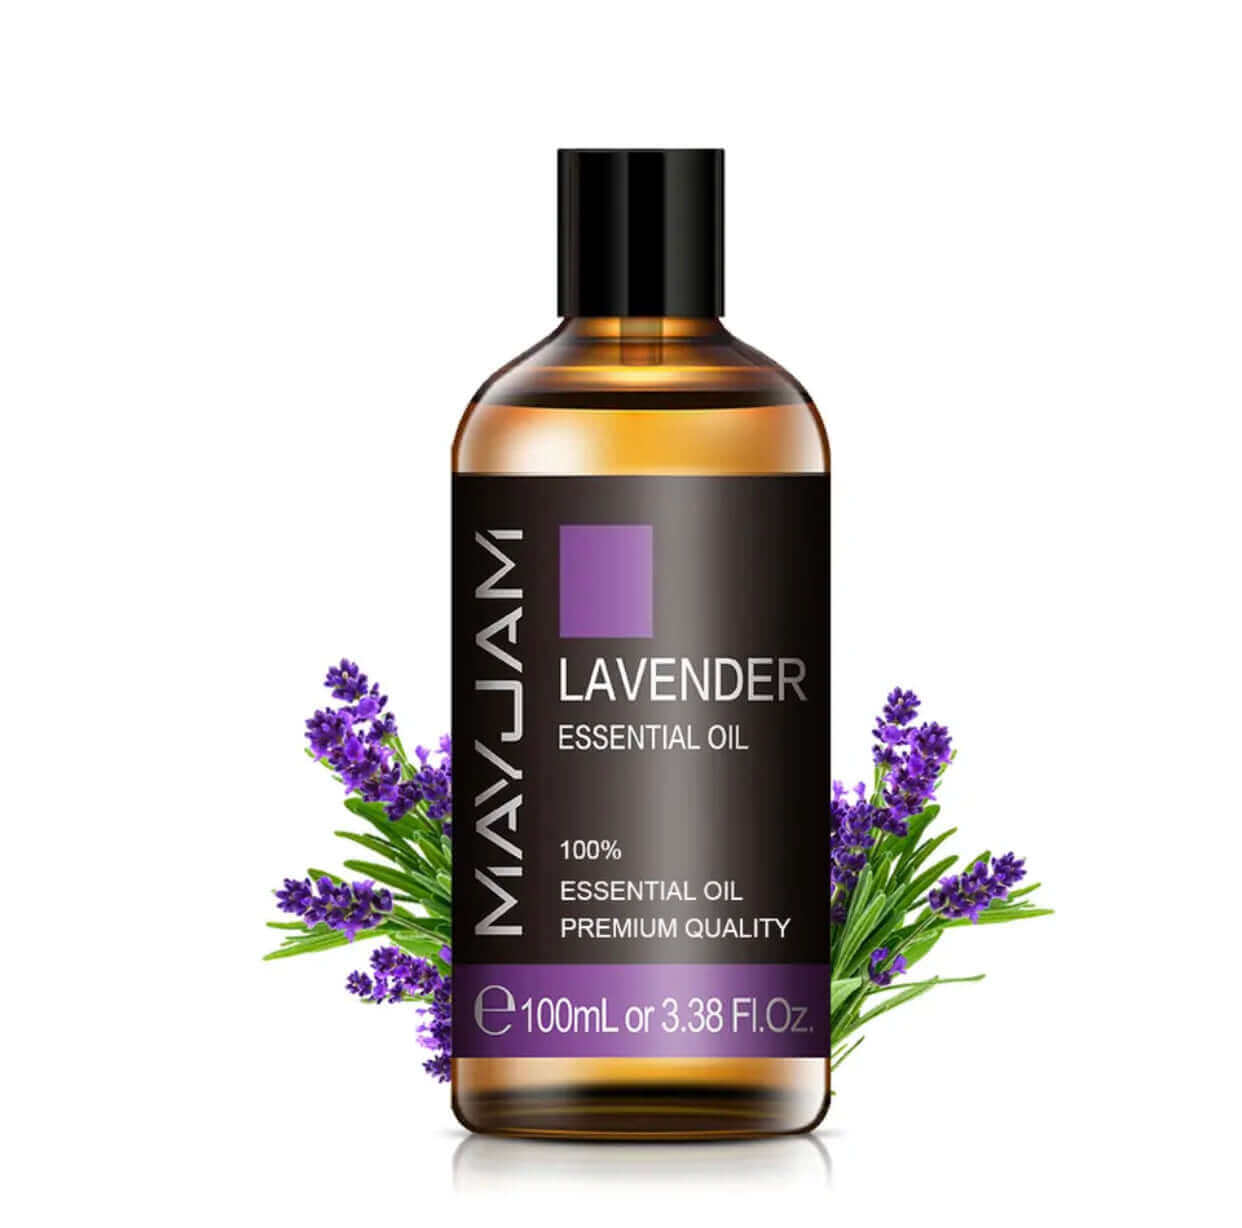 Hochwertige Ätherische Öle 100 ml: Lavendel, Eukalyptus und Mehr - Reine Natur in Jeder Flasche!